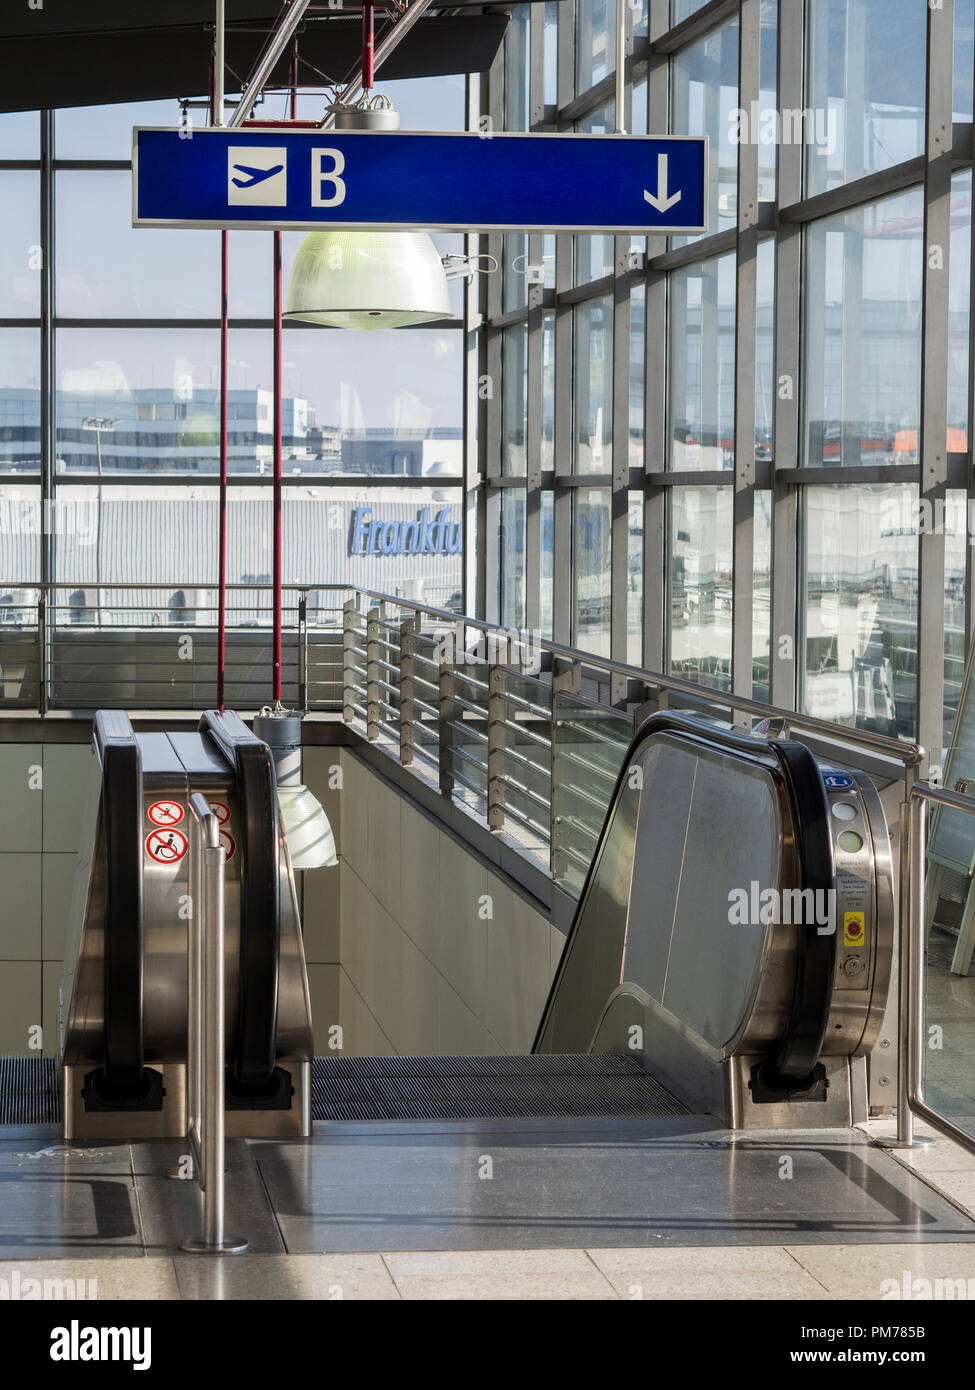 Escaleras en el aeropuerto de Frankfurt mostrando B Gates firmar y Terminal de abajo Foto de stock